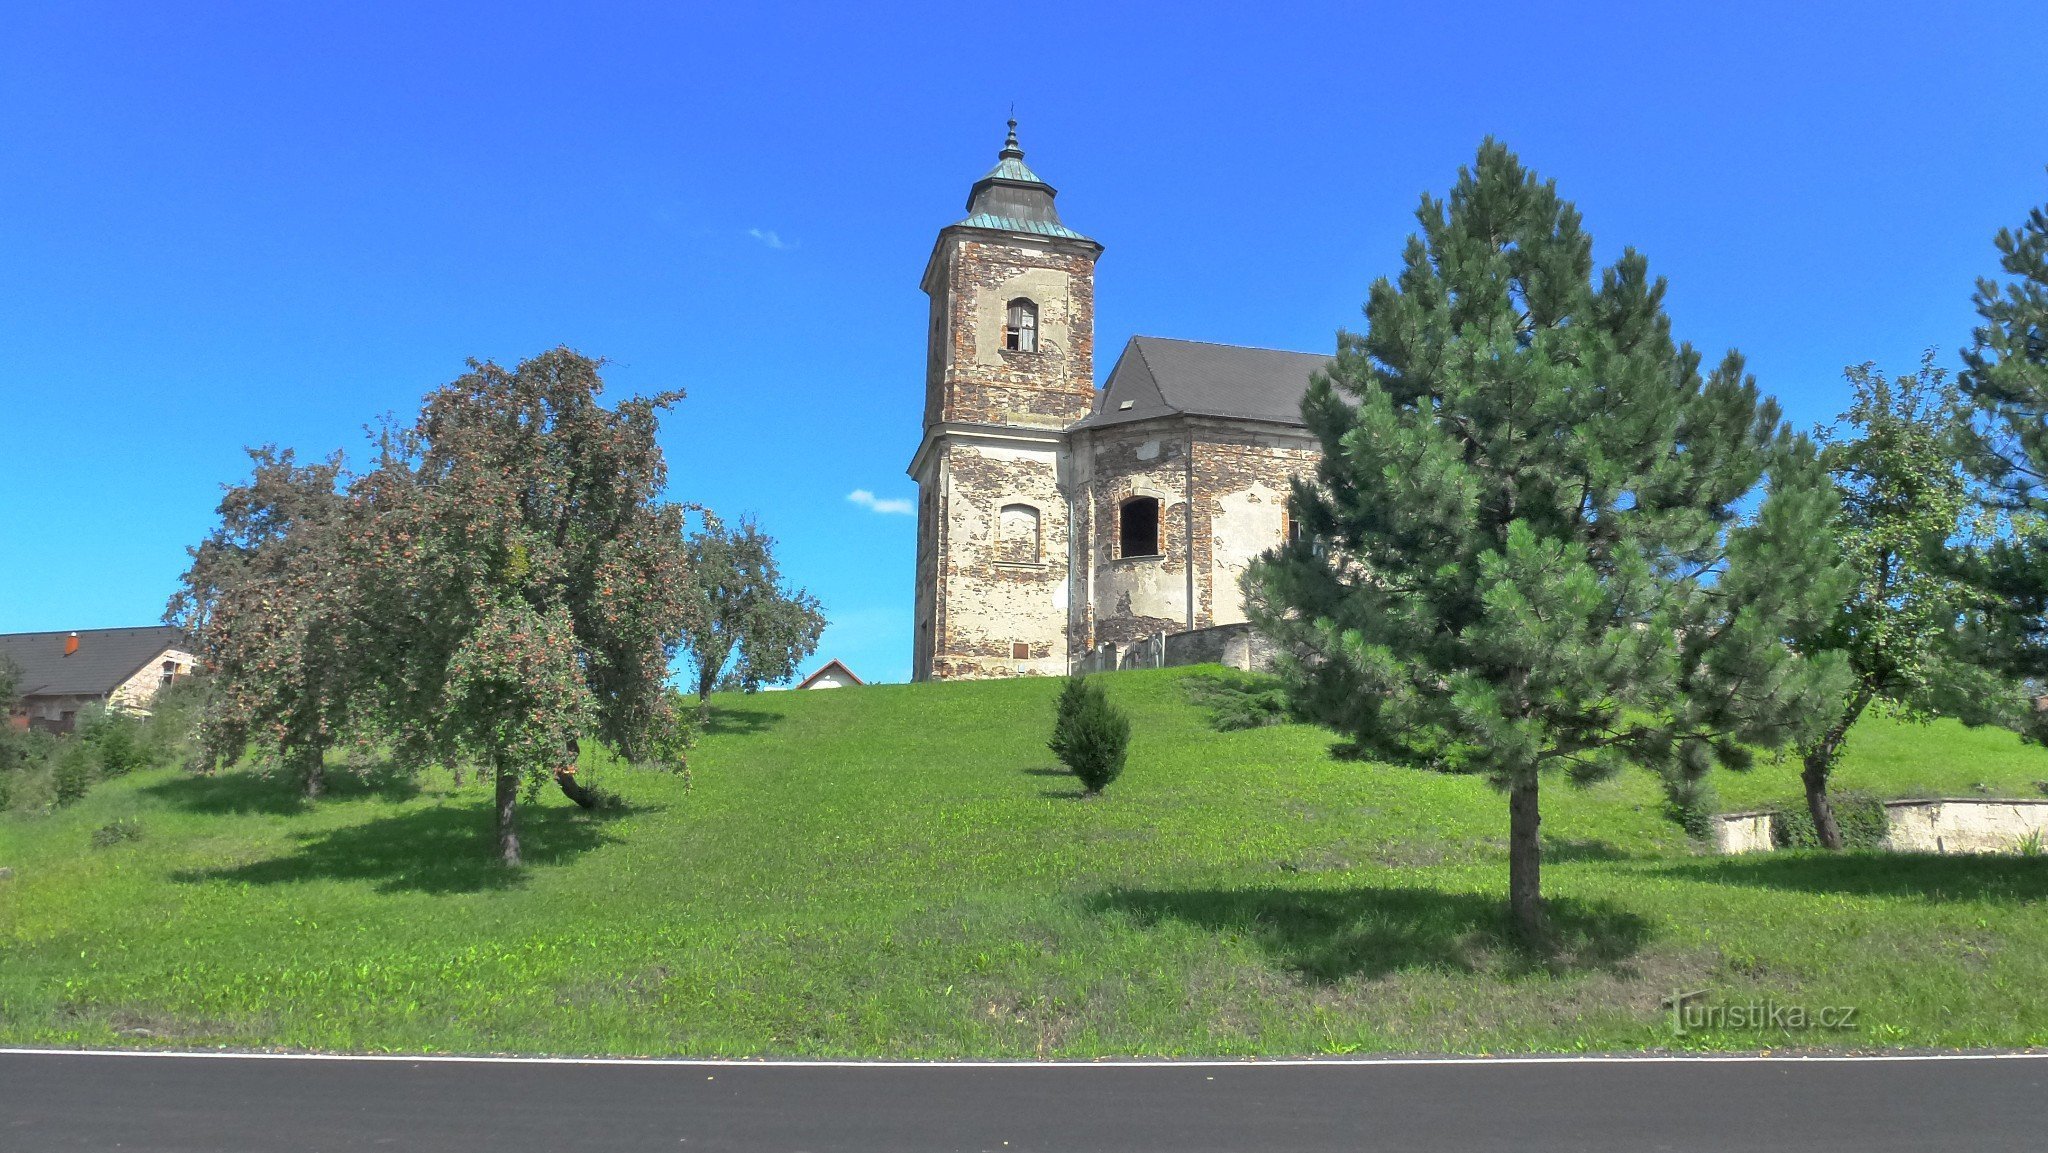 La característica dominante del pueblo es la iglesia de 1738, la de madera original se menciona ya en 1352